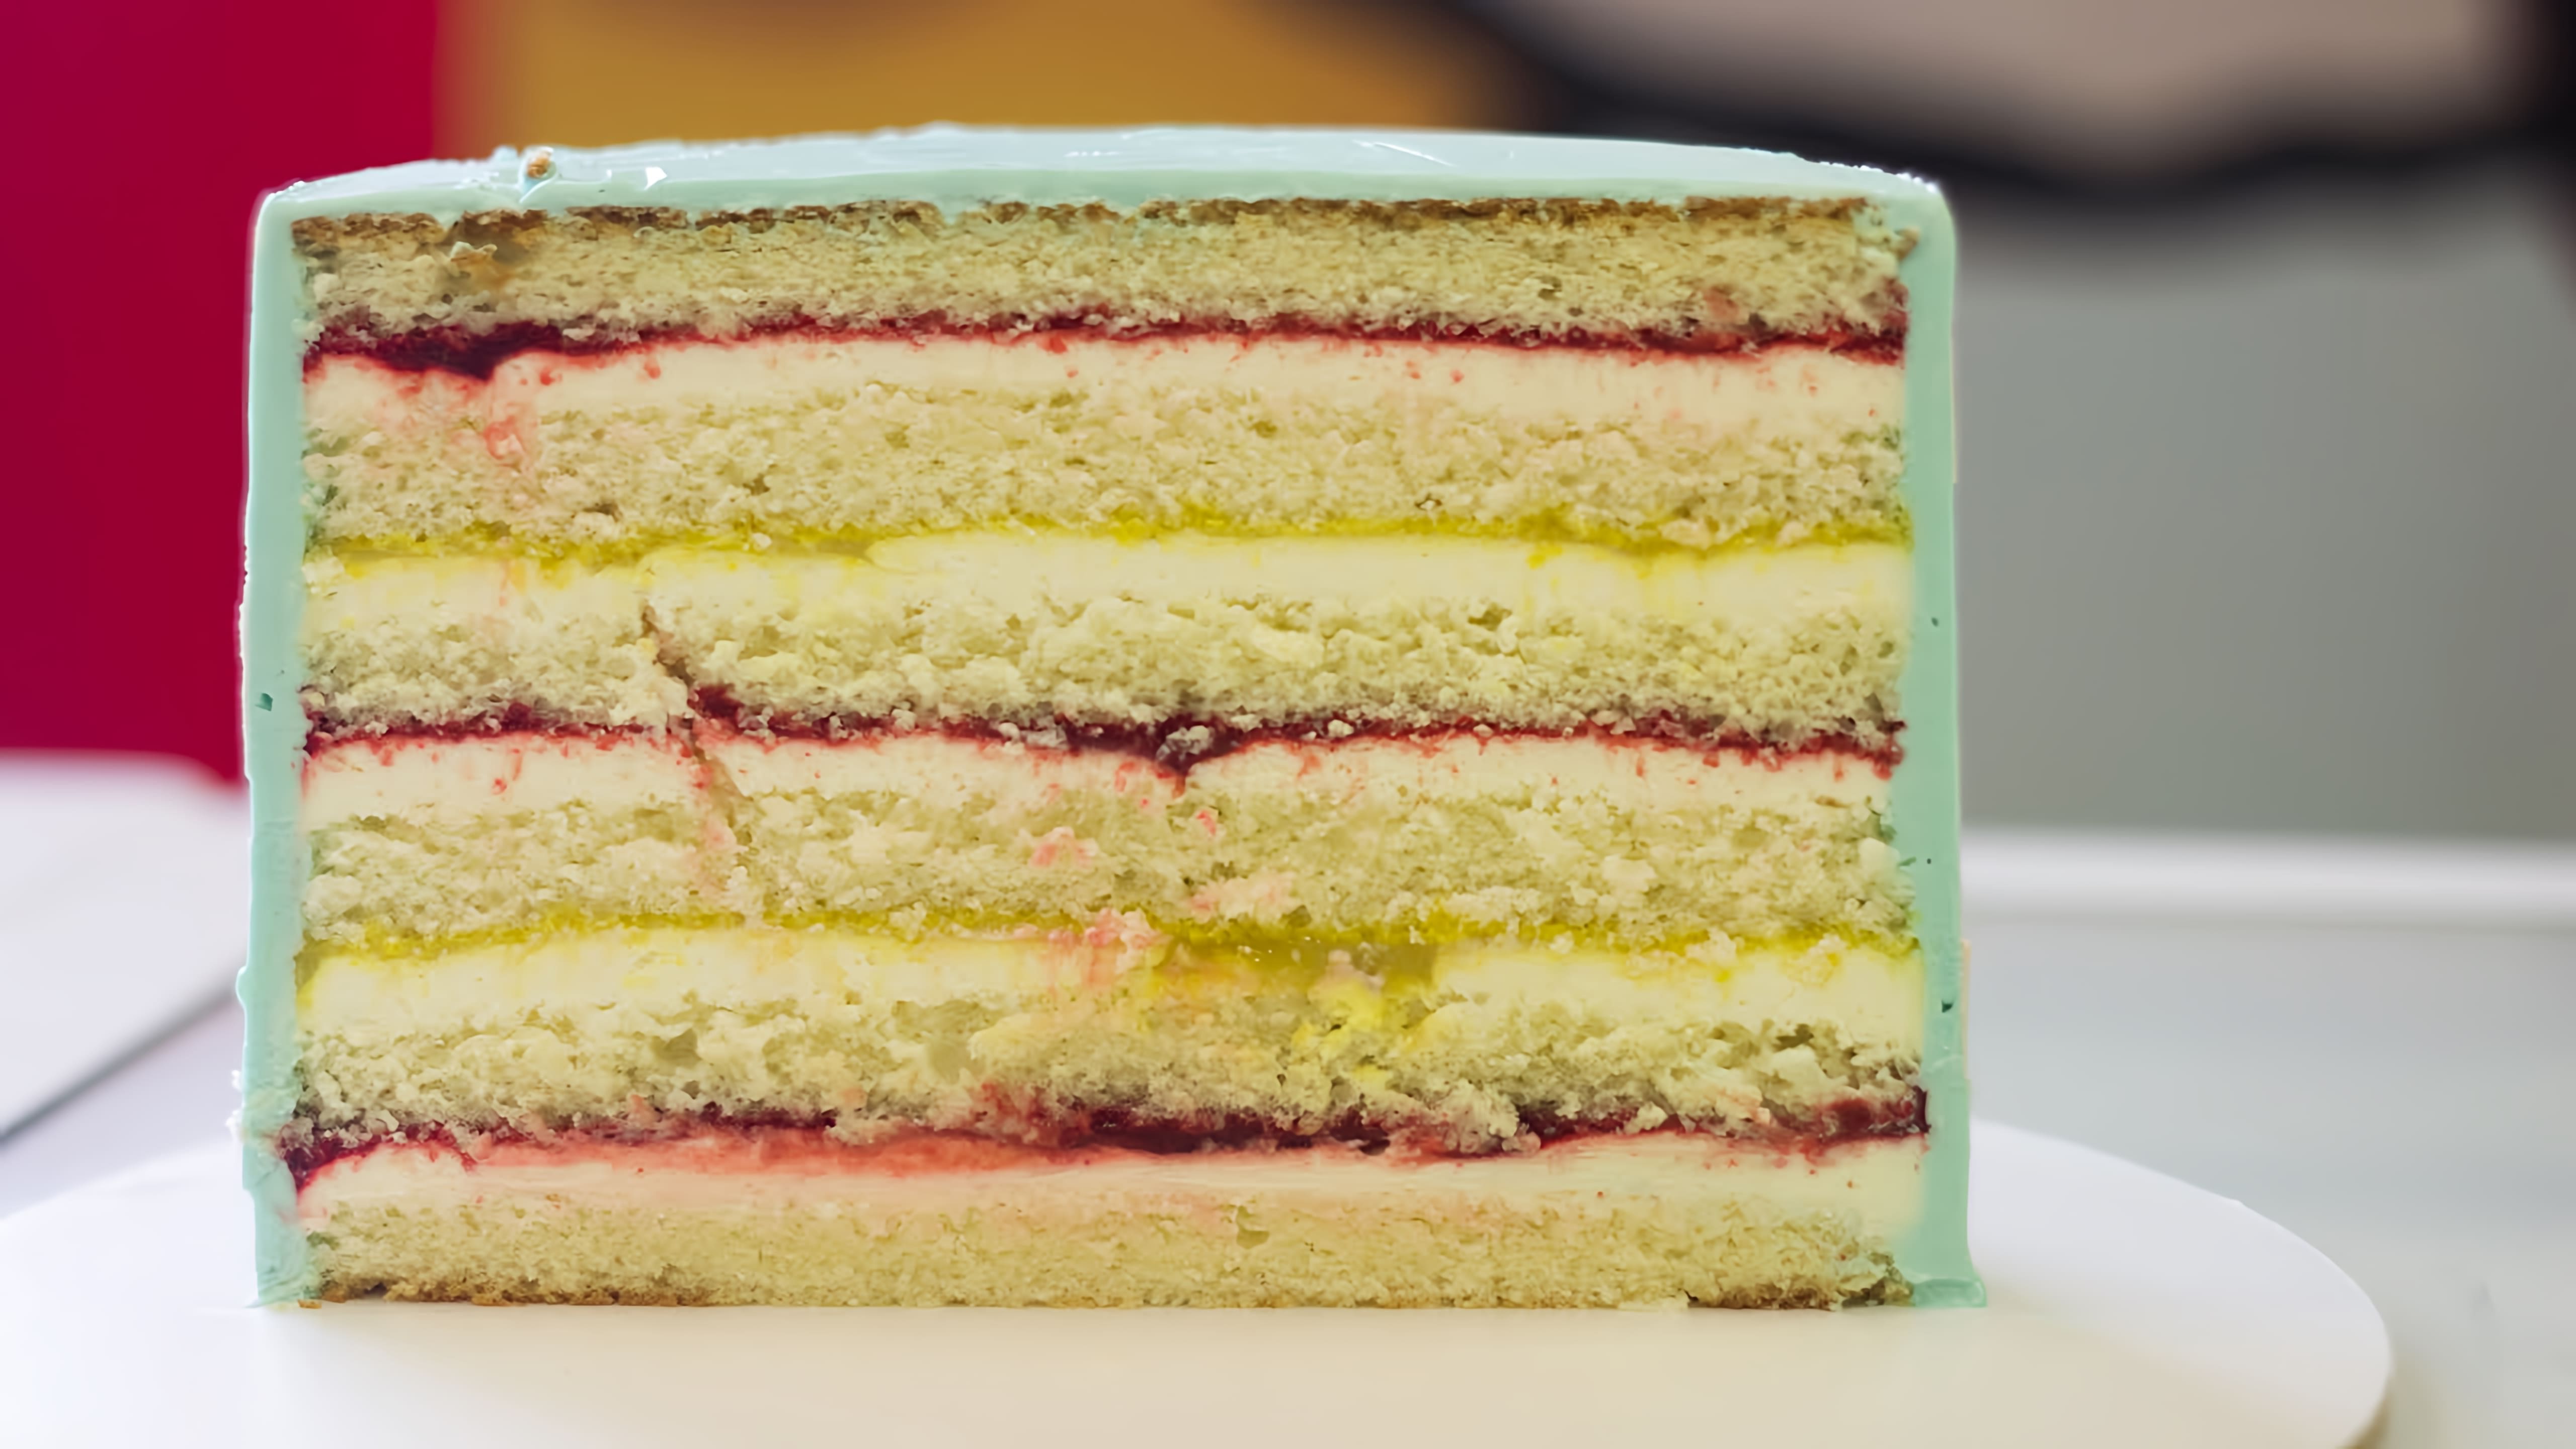 В этом видео демонстрируется рецепт простого торта с клубникой, который можно приготовить на день рождения